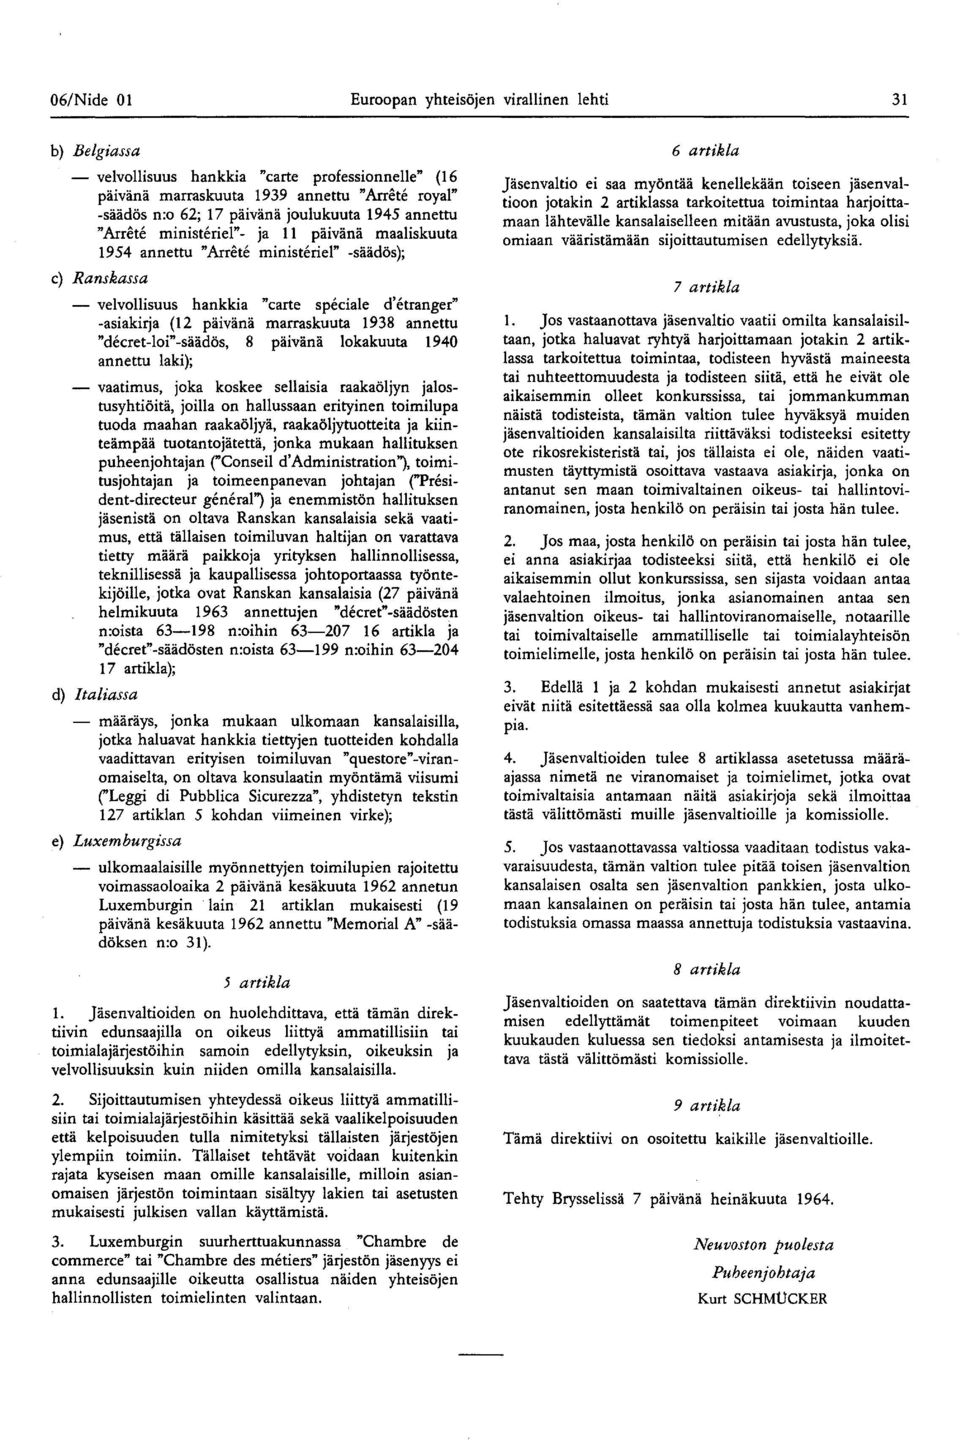 marraskuuta 1938 annettu "decret-loi"-säädös, 8 päivänä lokakuuta 1940 annettu laki); vaatimus, joka koskee sellaisia raakaöljyn jalostusyhtiöitä, joilla on hallussaan erityinen toimilupa tuoda